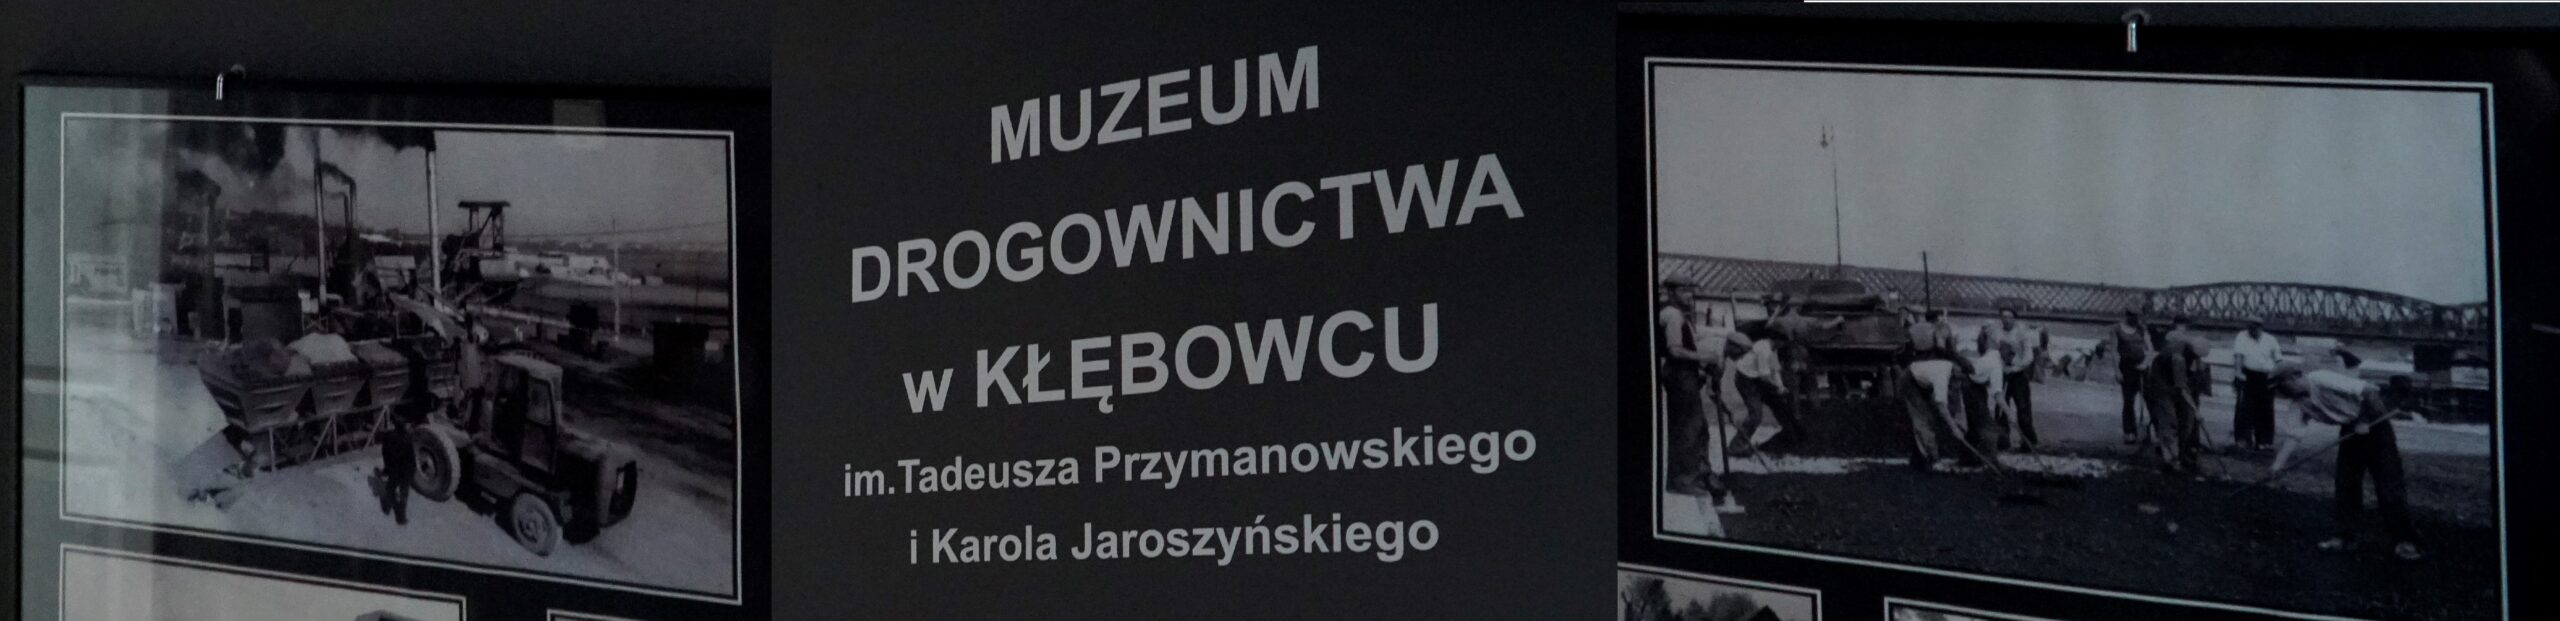 Muzeum Drogownictwa w Kłębowcu